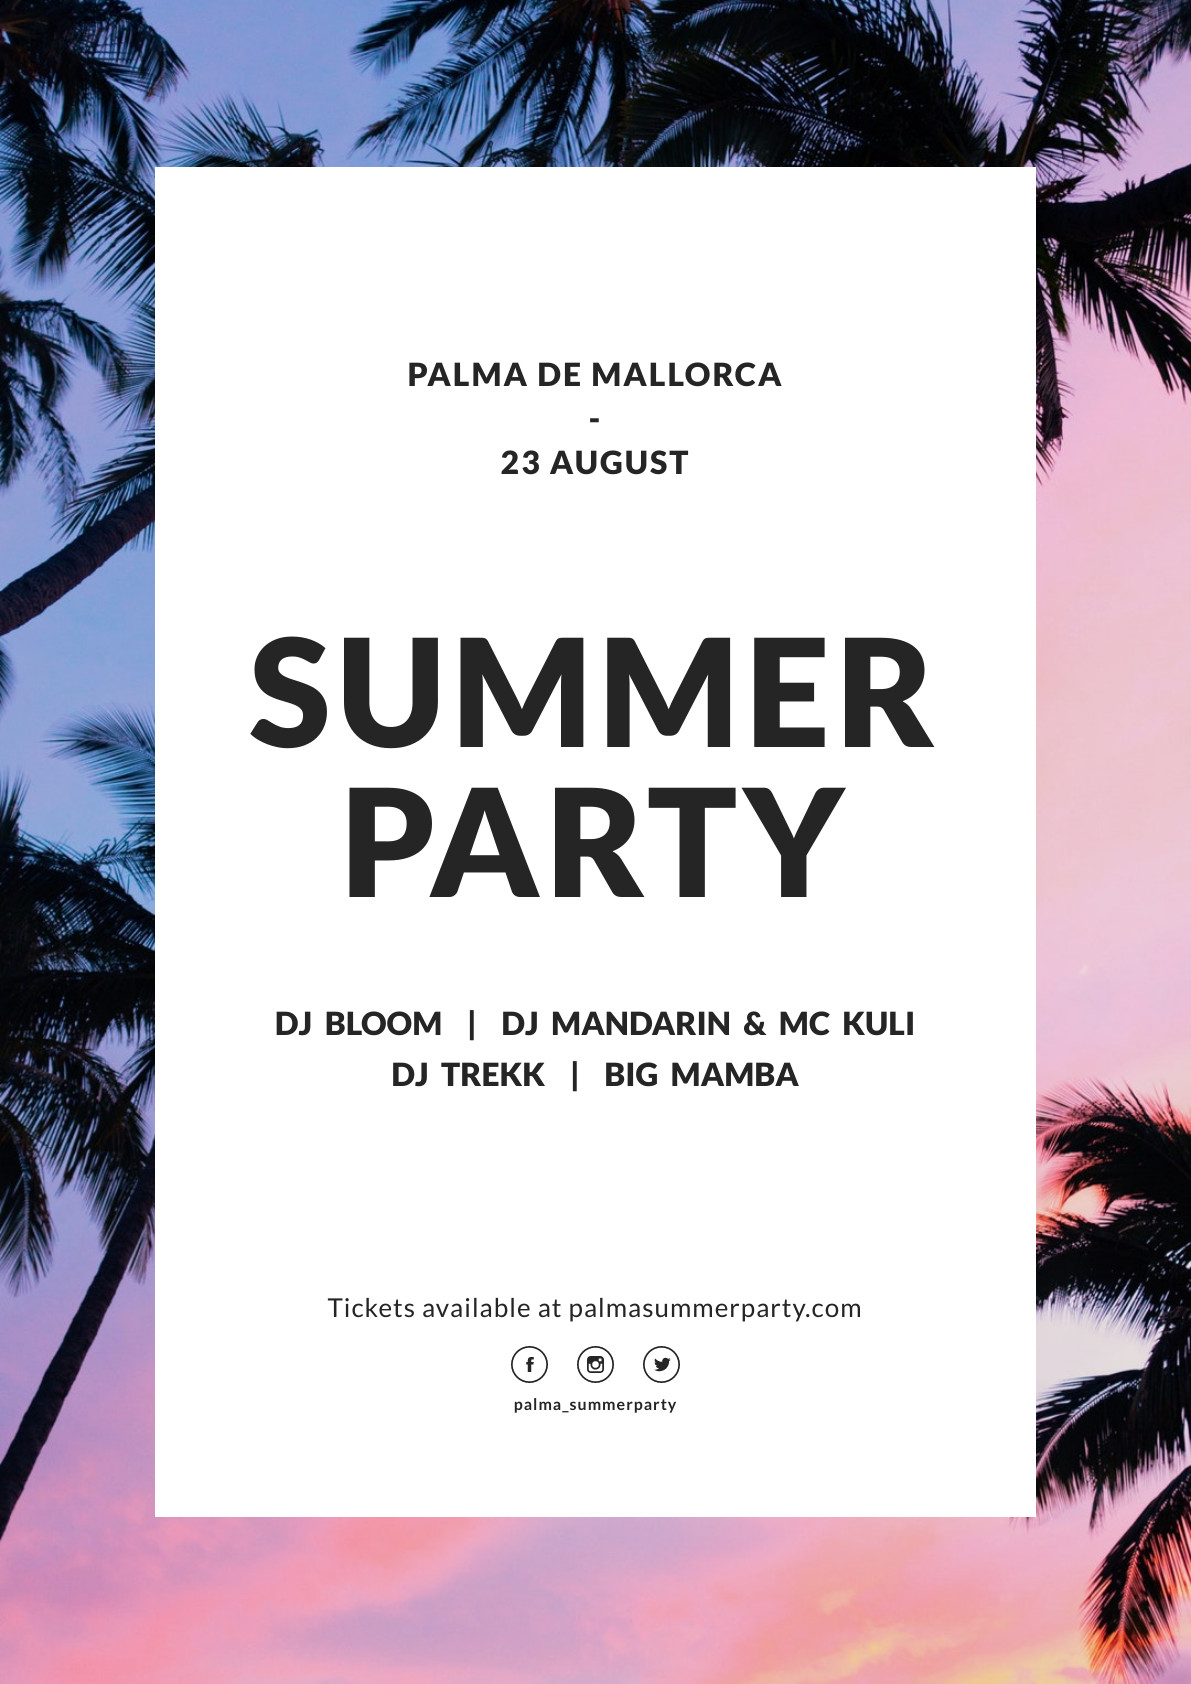 Palma de Mallorca Party – Poster Template 1191x1684